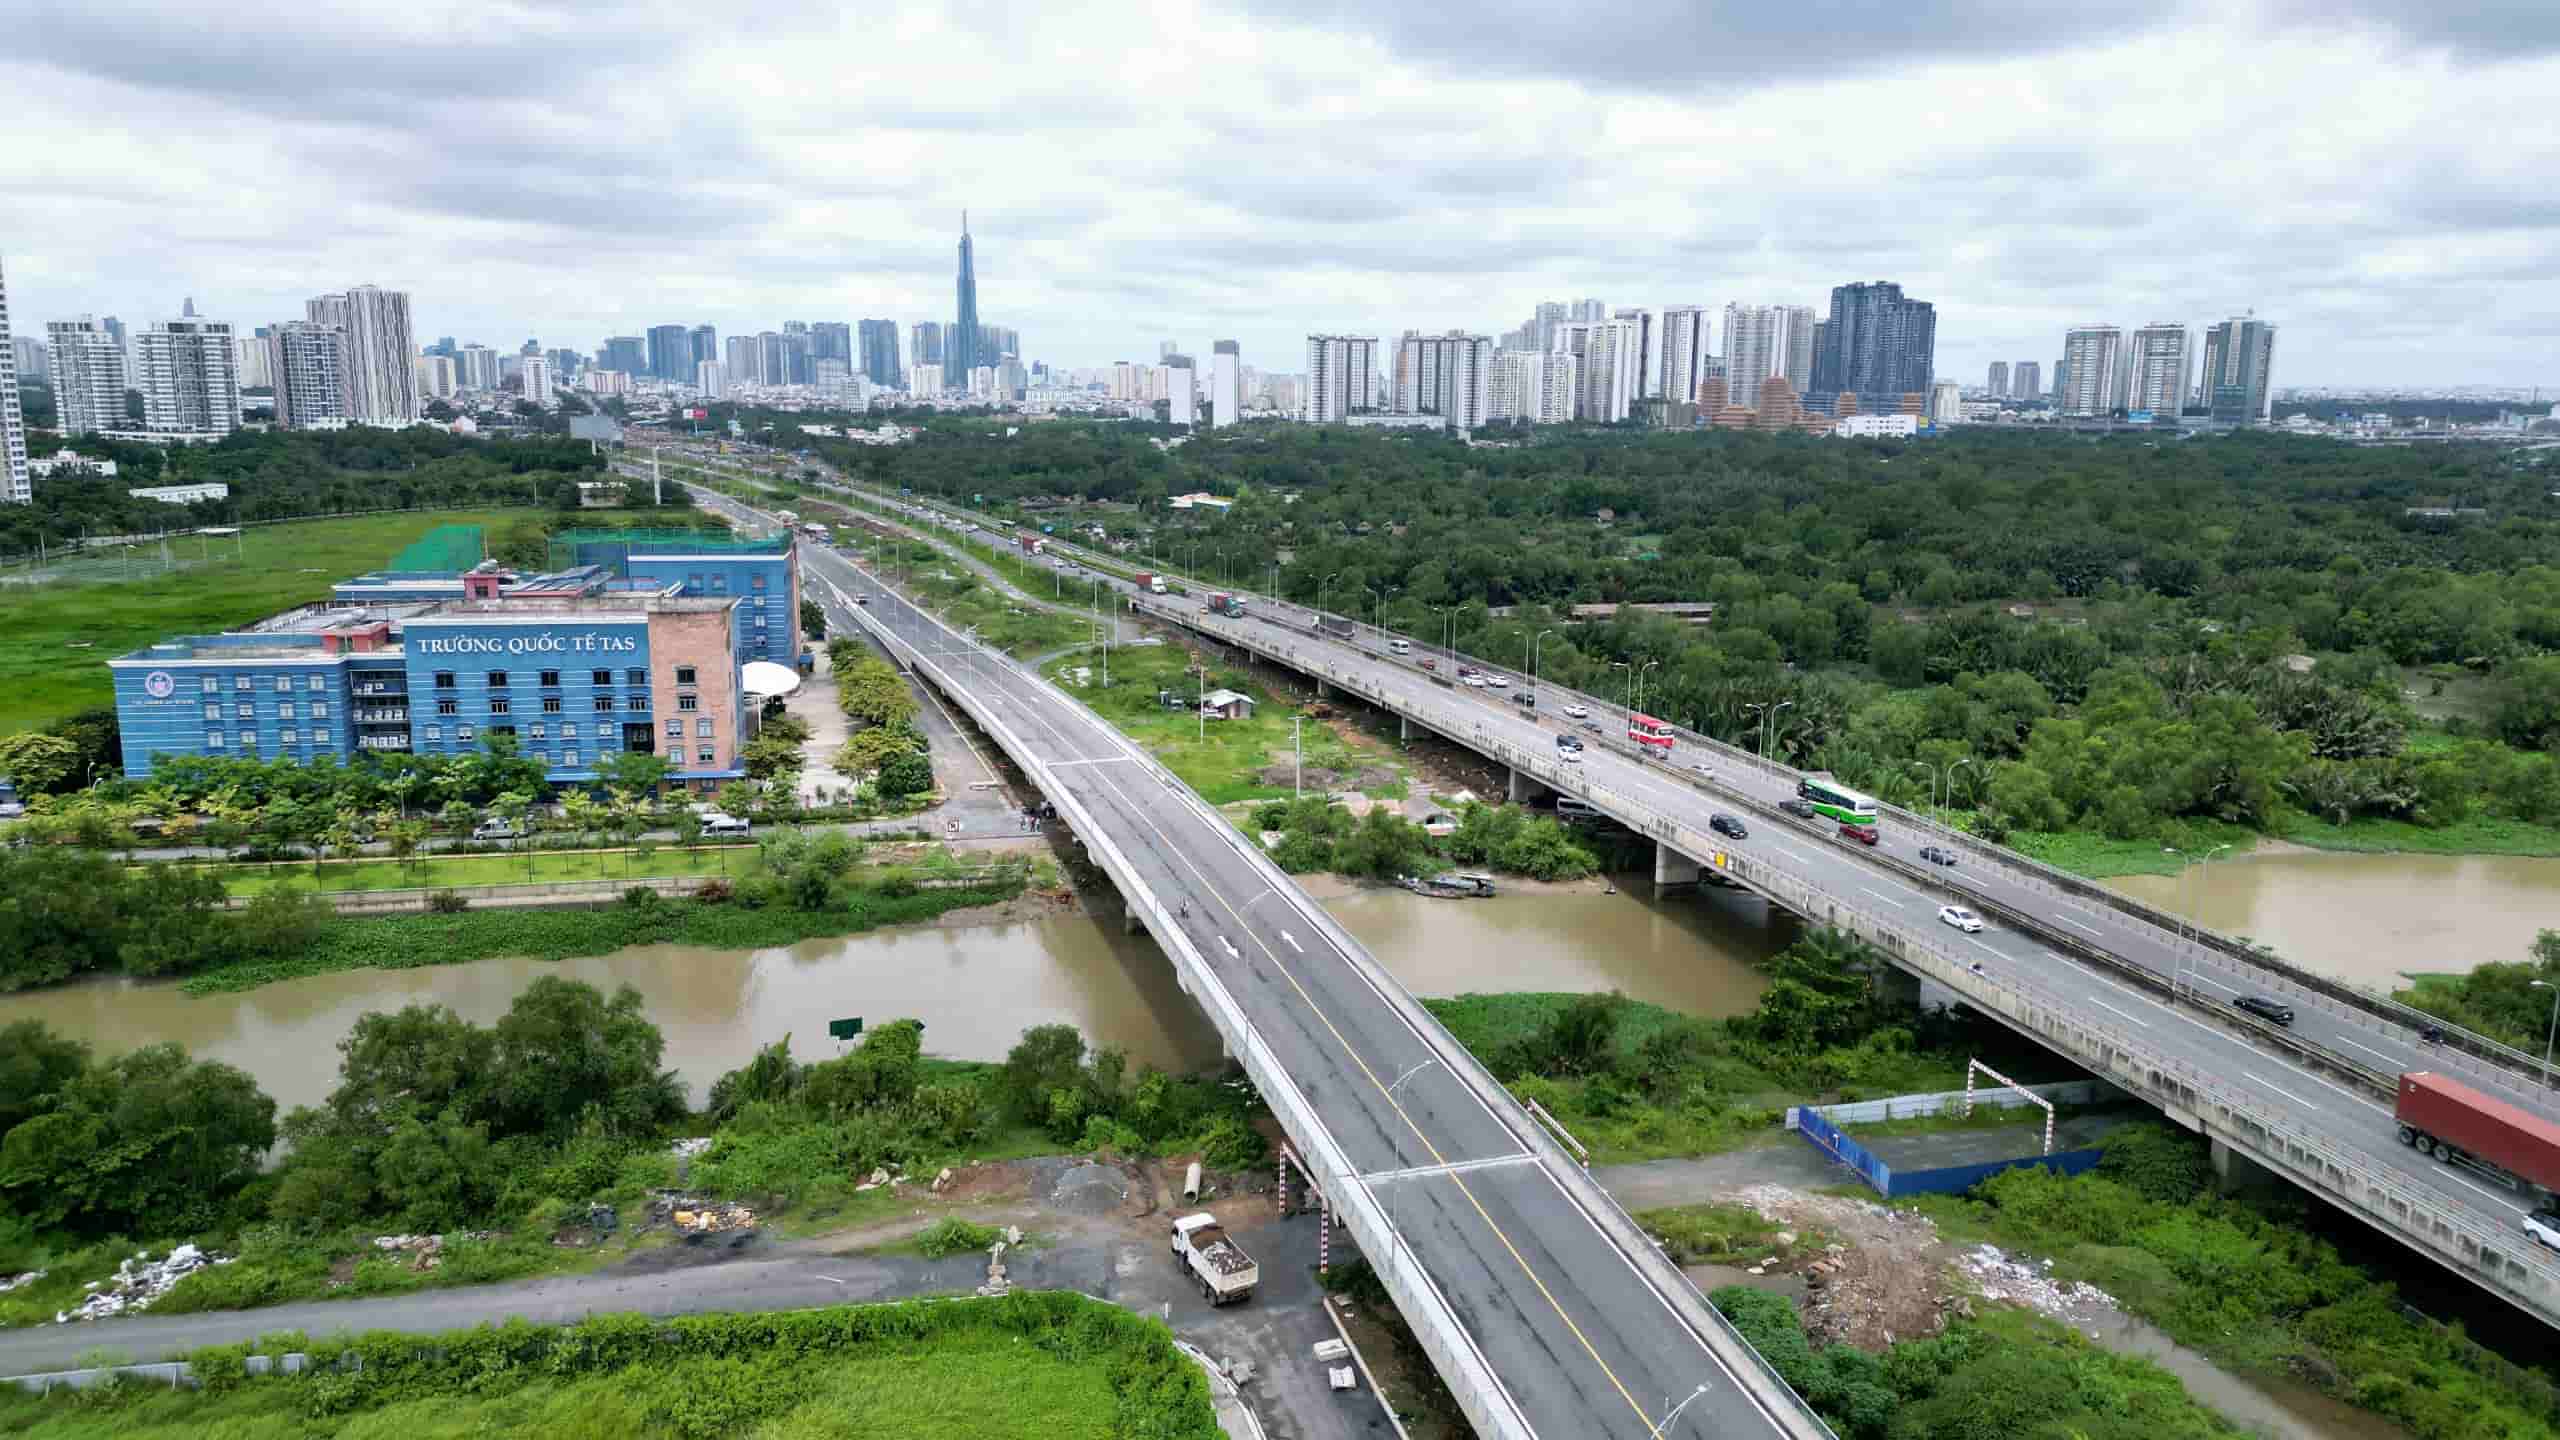 Cùng với tuyến đường, dự án còn xây ba cầu gồm Bà Dạt, Mương Kênh, Bà Hiện có tổng chiều dài khoảng 567 m. Ngày 25/7, cầu Mương Kênh (360 m, dài nhất) đã hoàn thiện so với thời điểm tháng 4 năm ngoái.